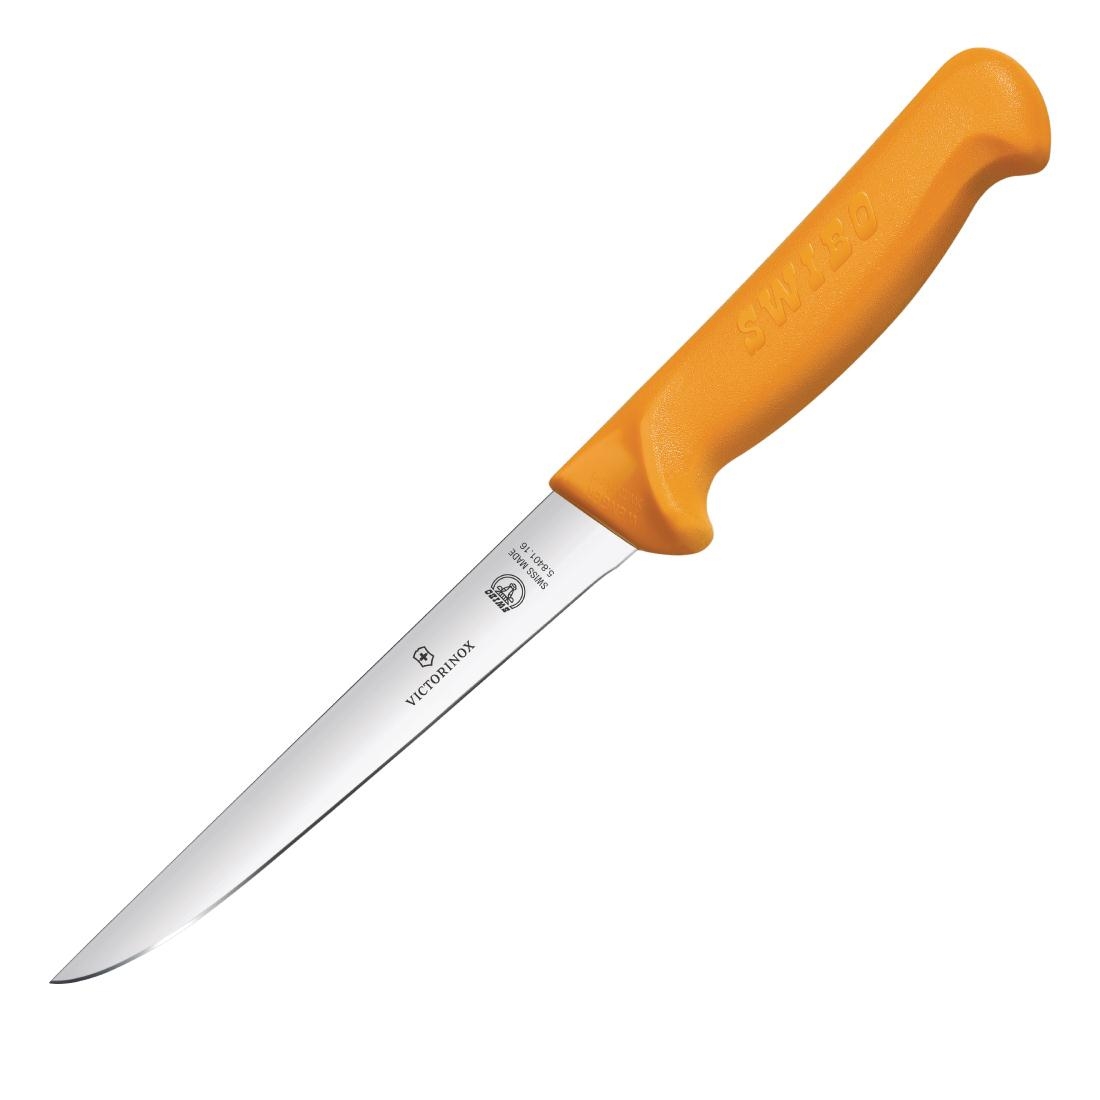 Swibo Boning Knife 18cm